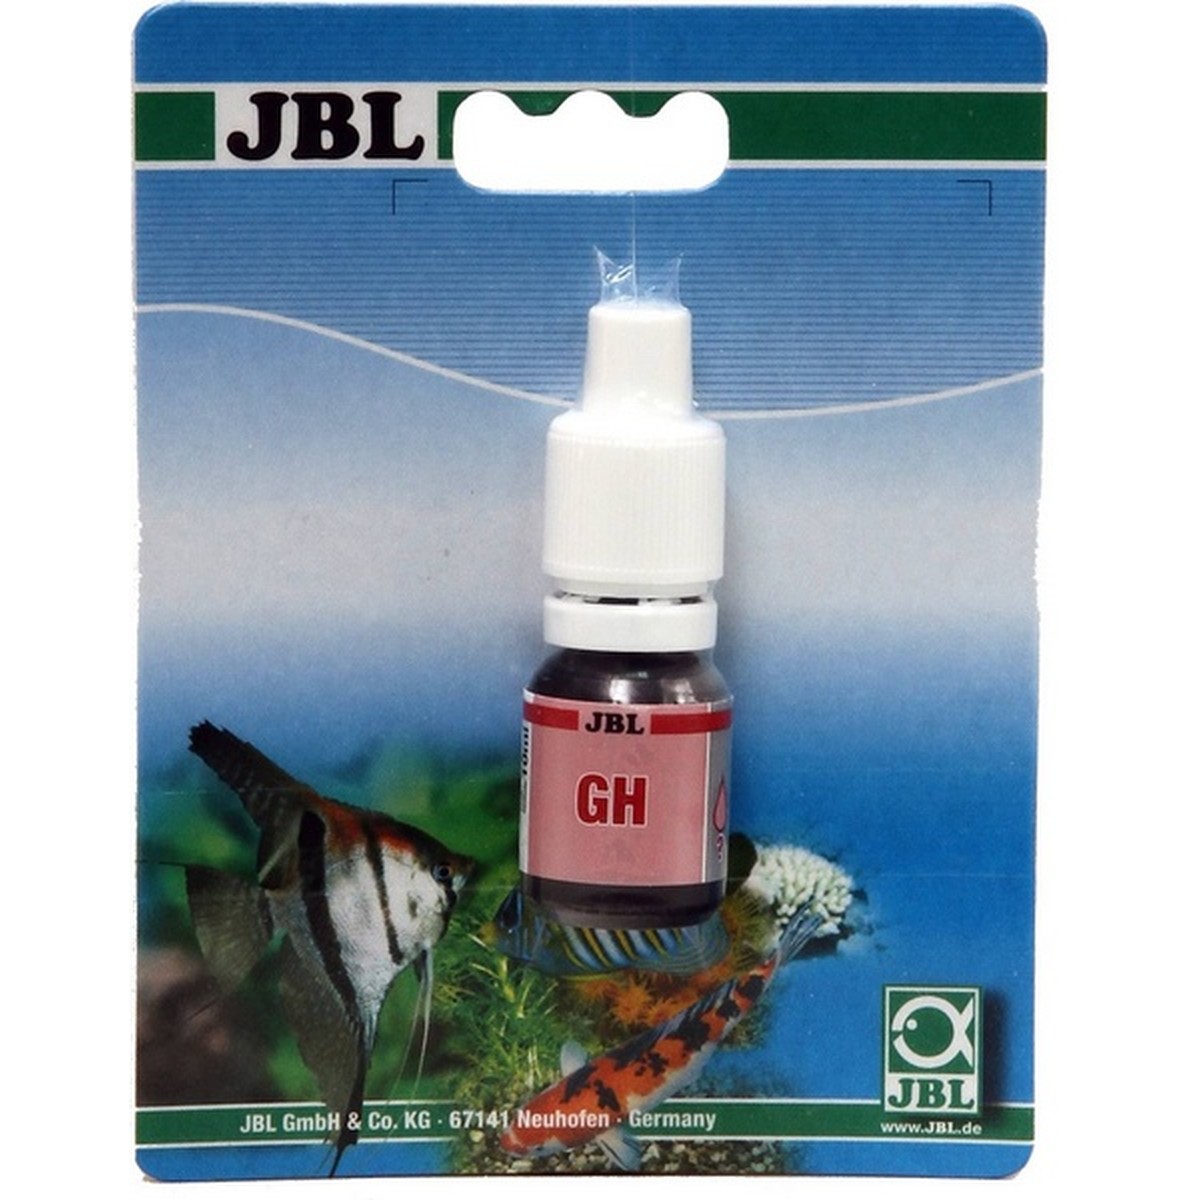   JBL GH test remplissage D/GB/F  